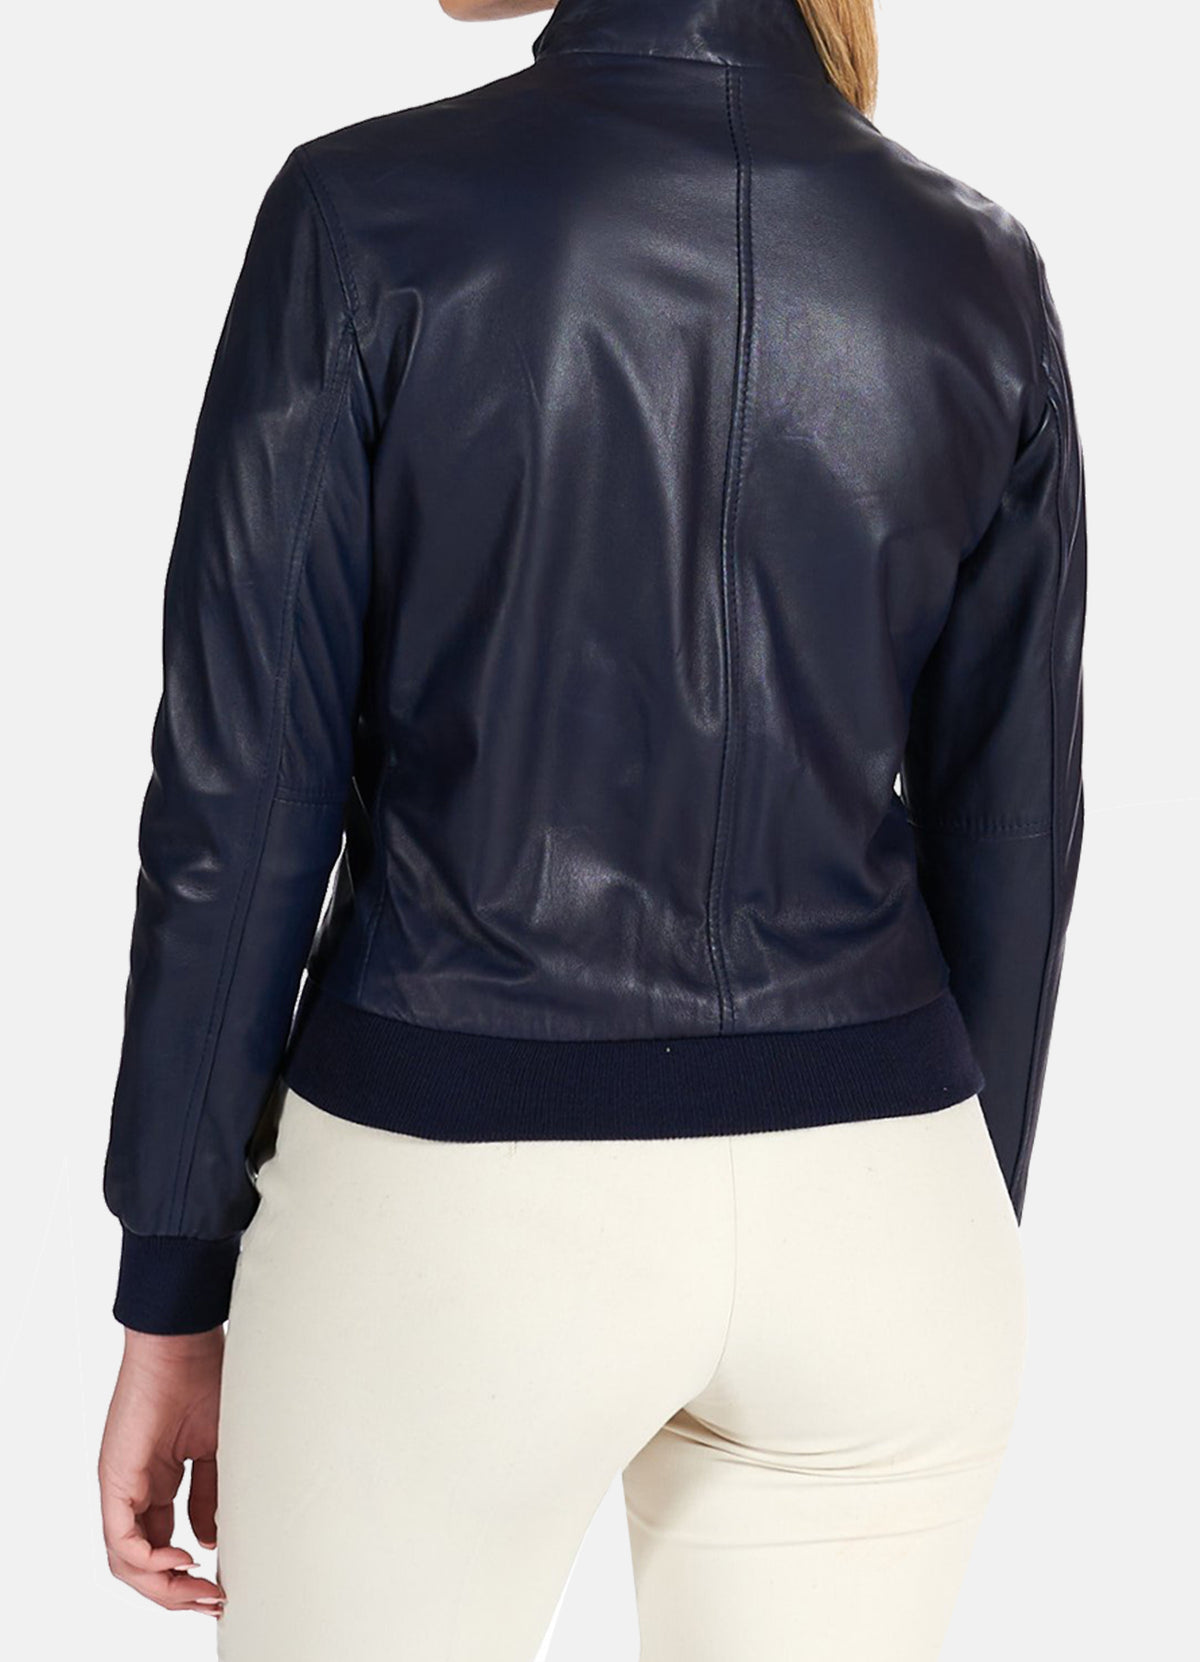 Womens Navy Blue Bomber Leather Jacket | Elite Jacket